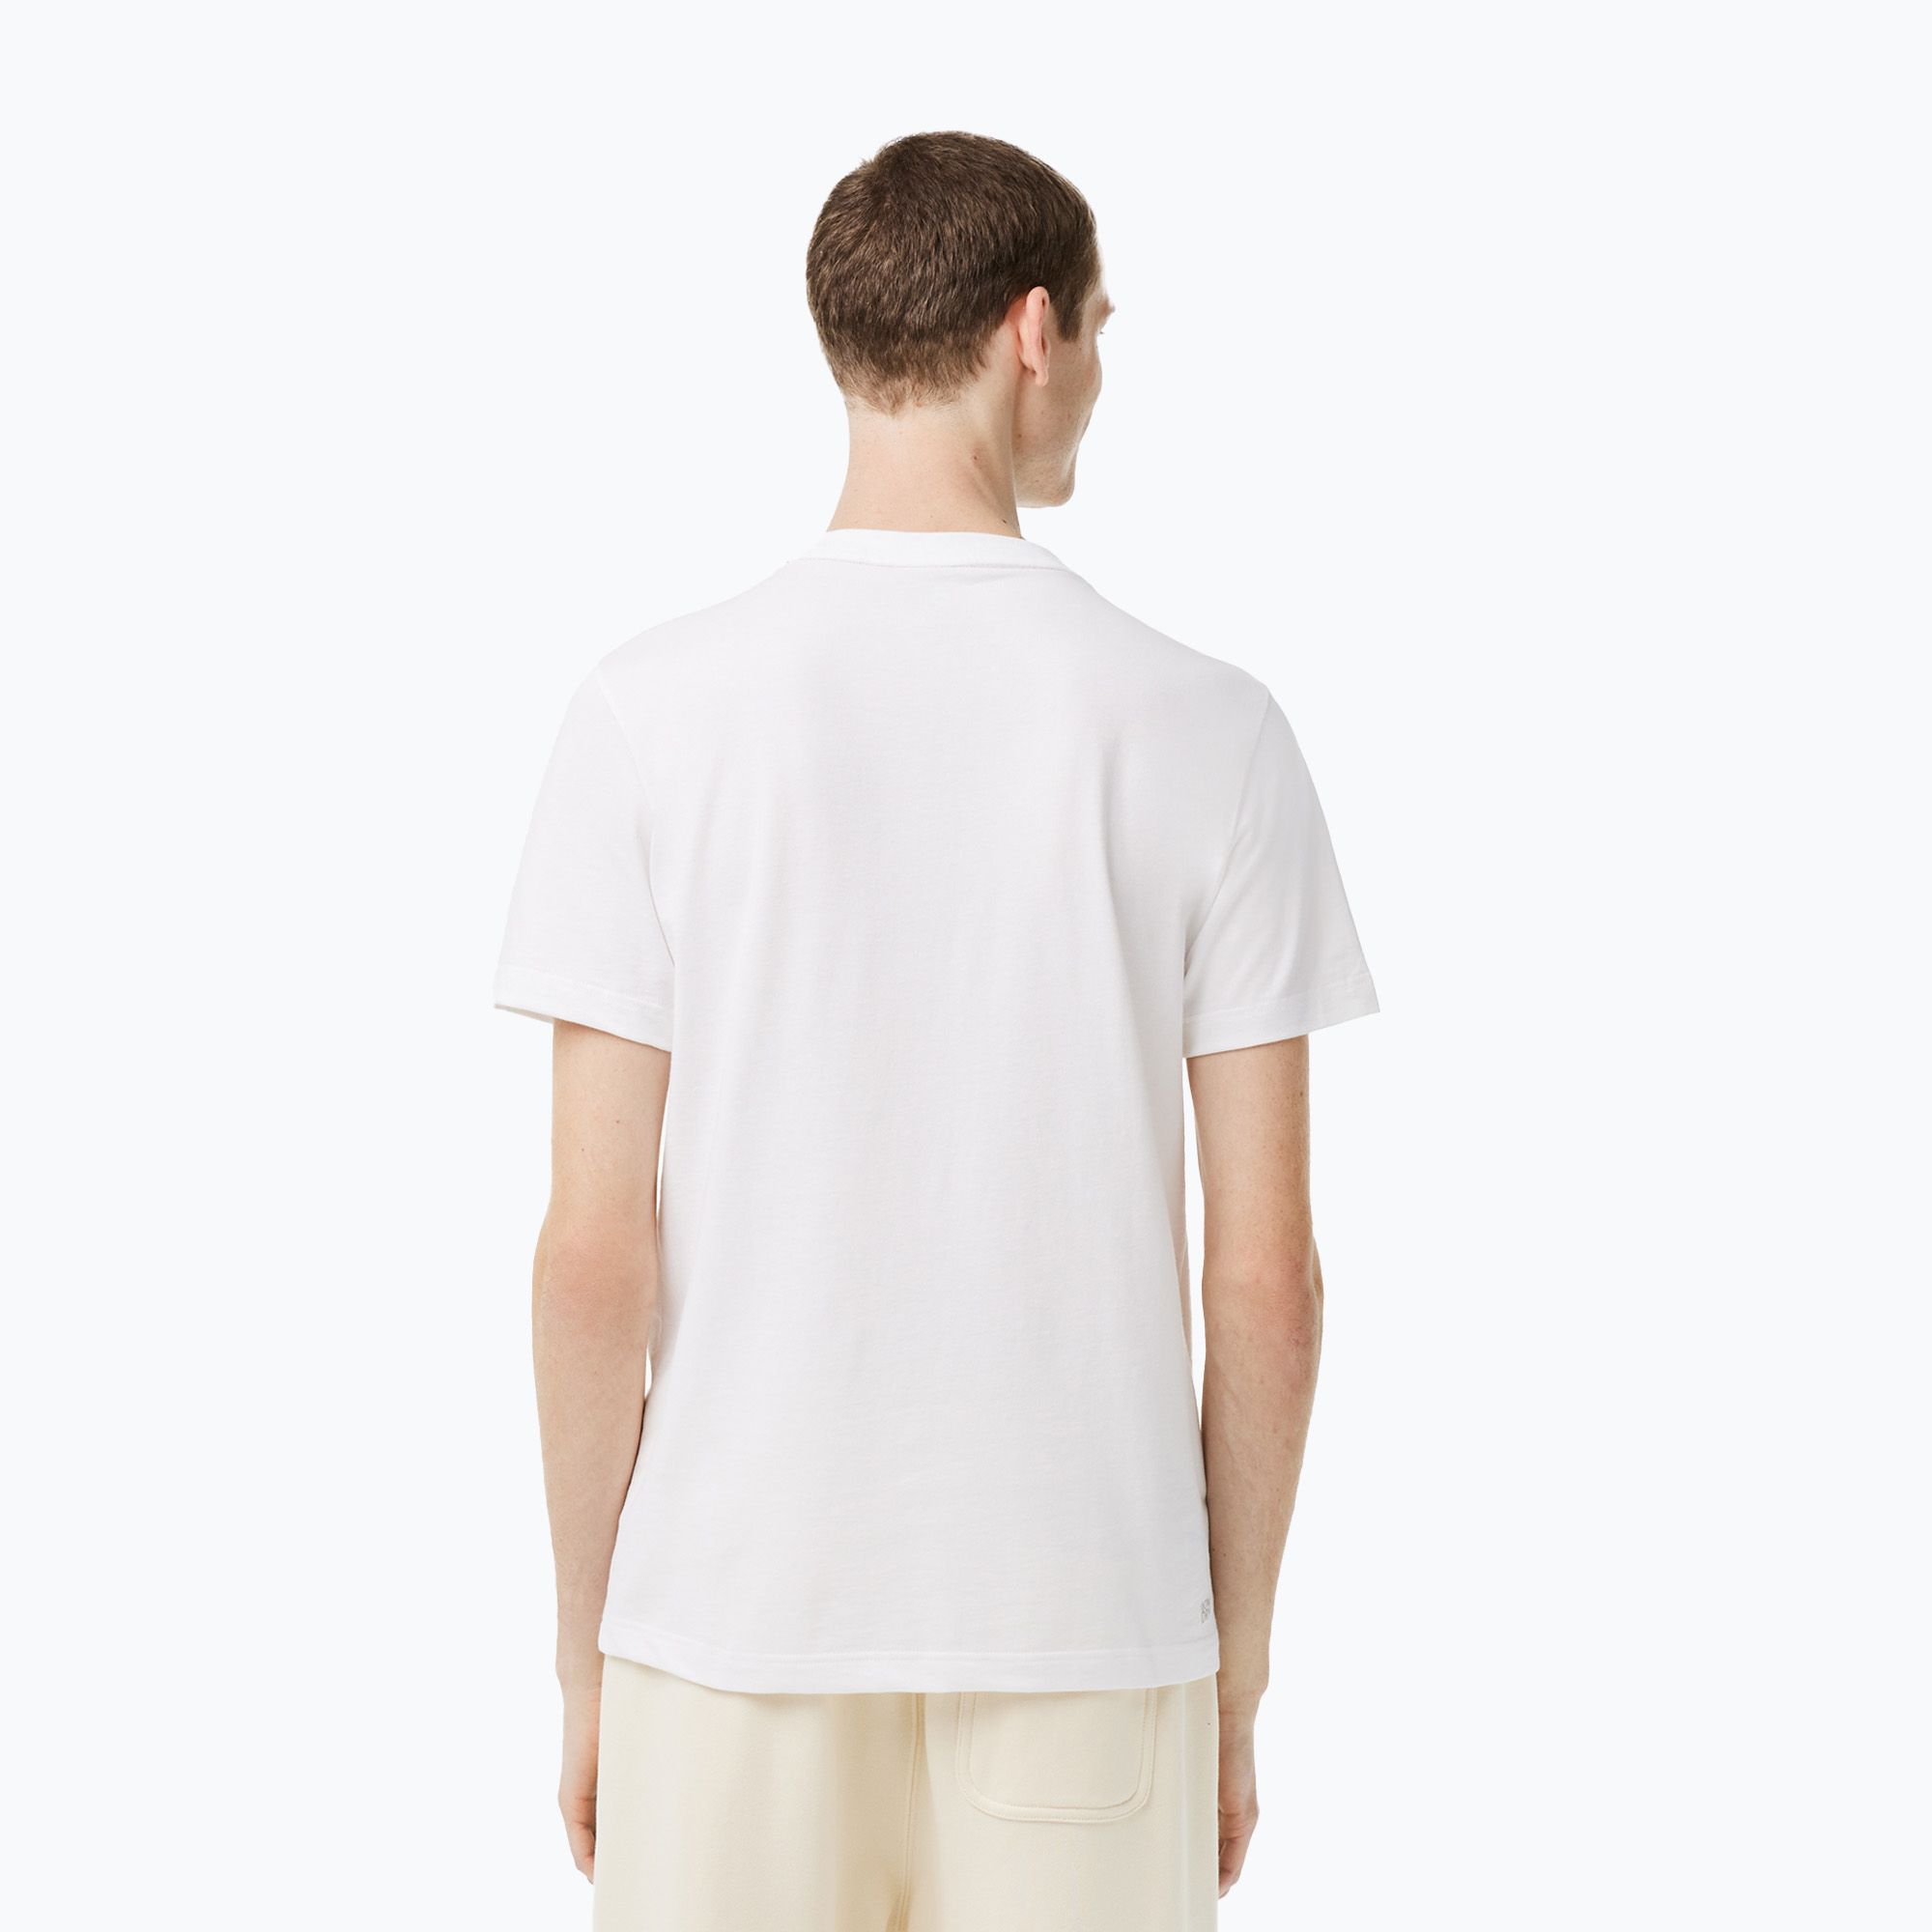 Koszulka tenisowa męska Lacoste TH2116 white zdjęcie nr 2